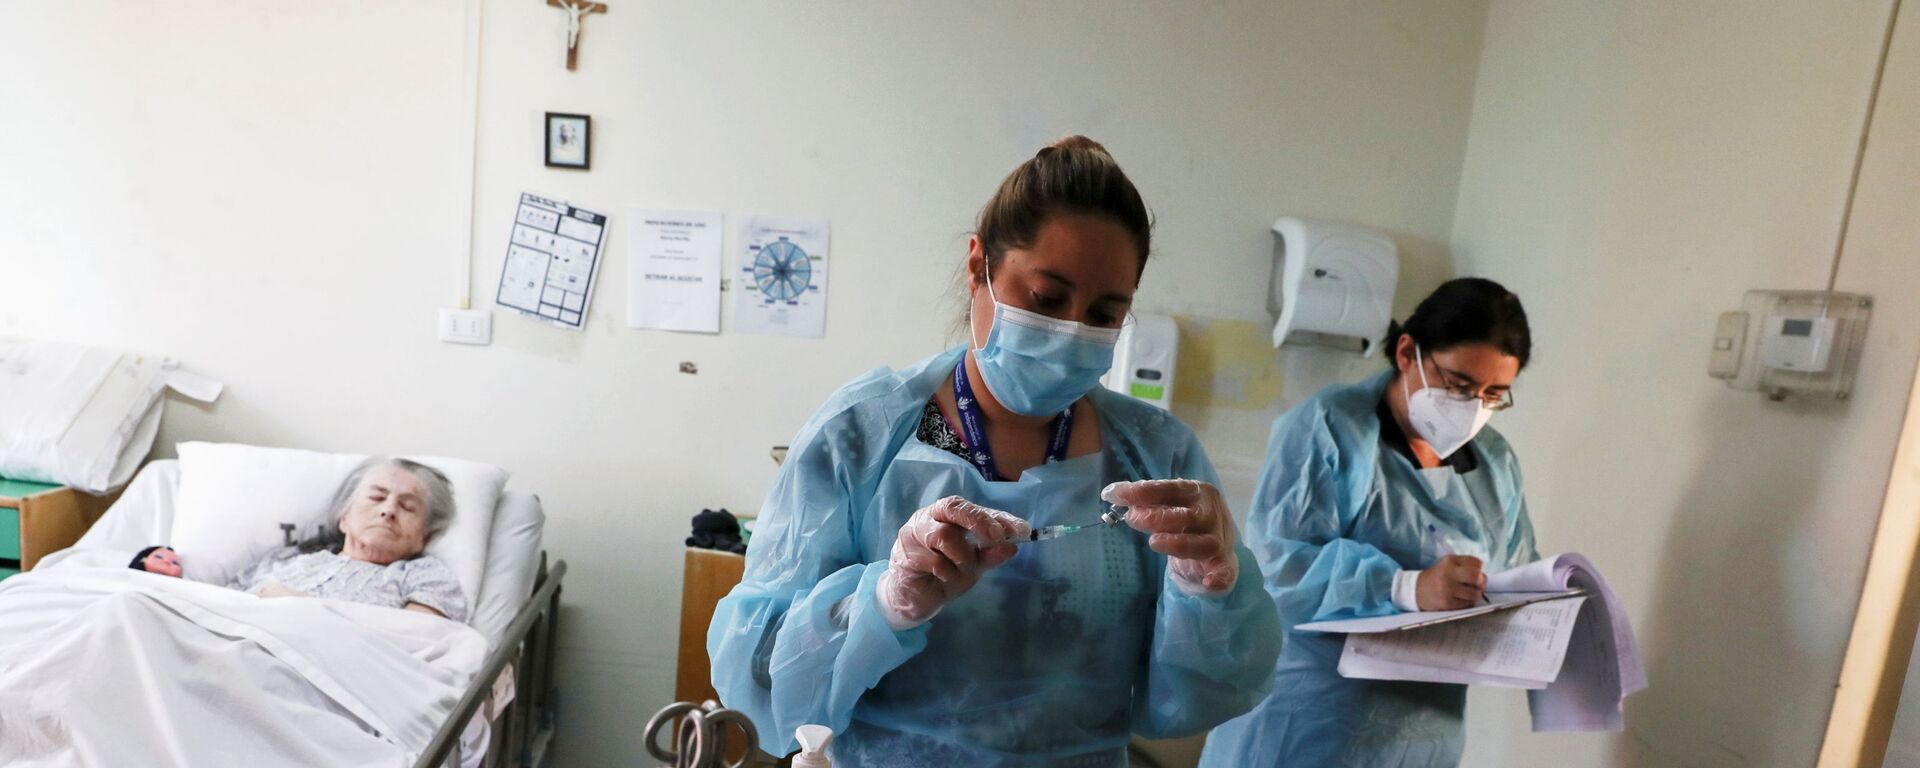 يستعد العاملون في الرعاية الصحية لإعطاء جرعة من لقاح سينوفاك ضد فيروس كورونا (كوفيد-19)، حيث تبدأ تشيلي في تطعيم كبار السن الذين يعيشون في دور رعاية المسنين في سانتياغو، تشيلي، 4 فبراير 2021 - سبوتنيك عربي, 1920, 07.04.2021